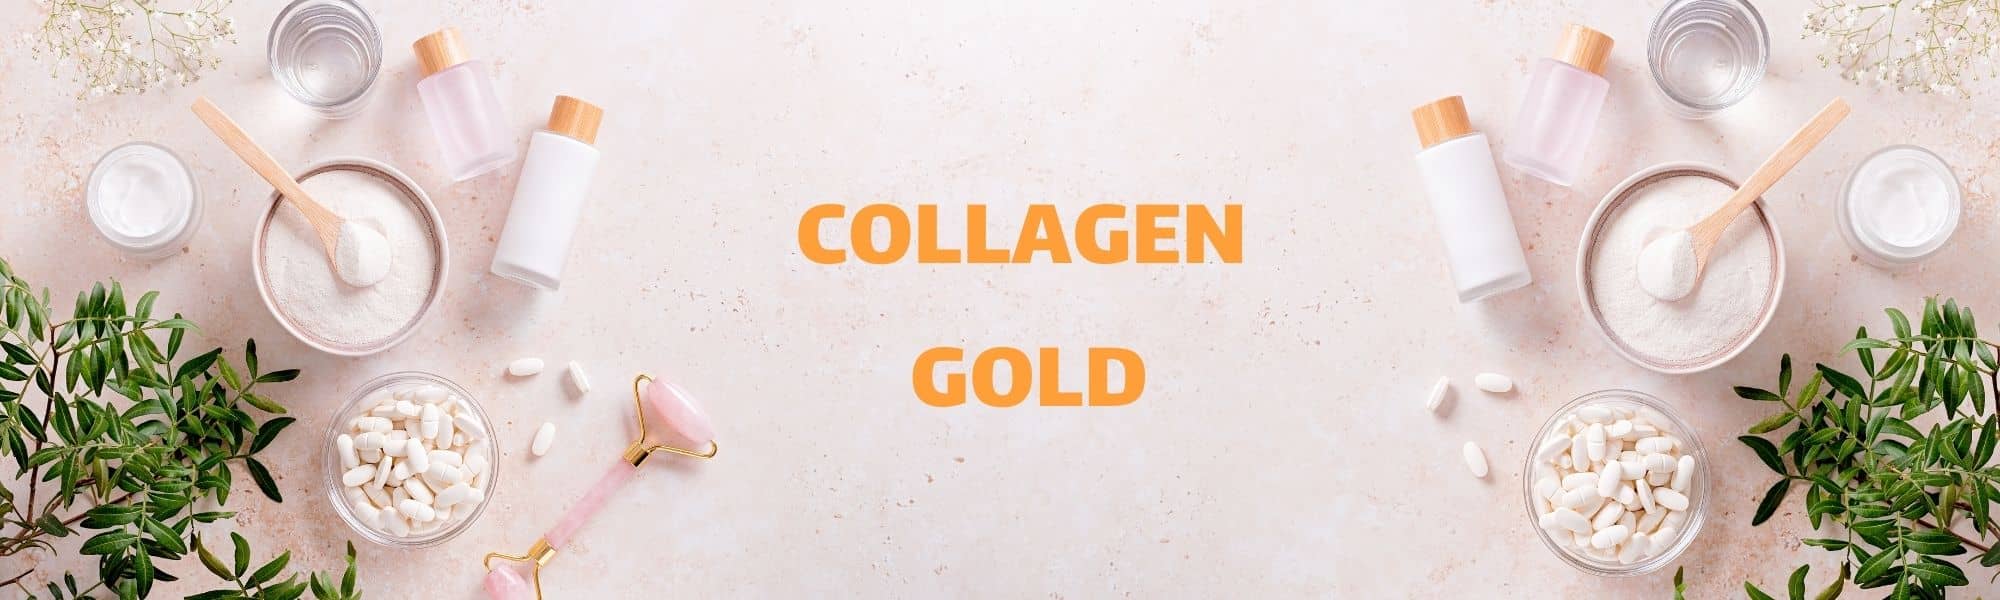 collagen gold 01